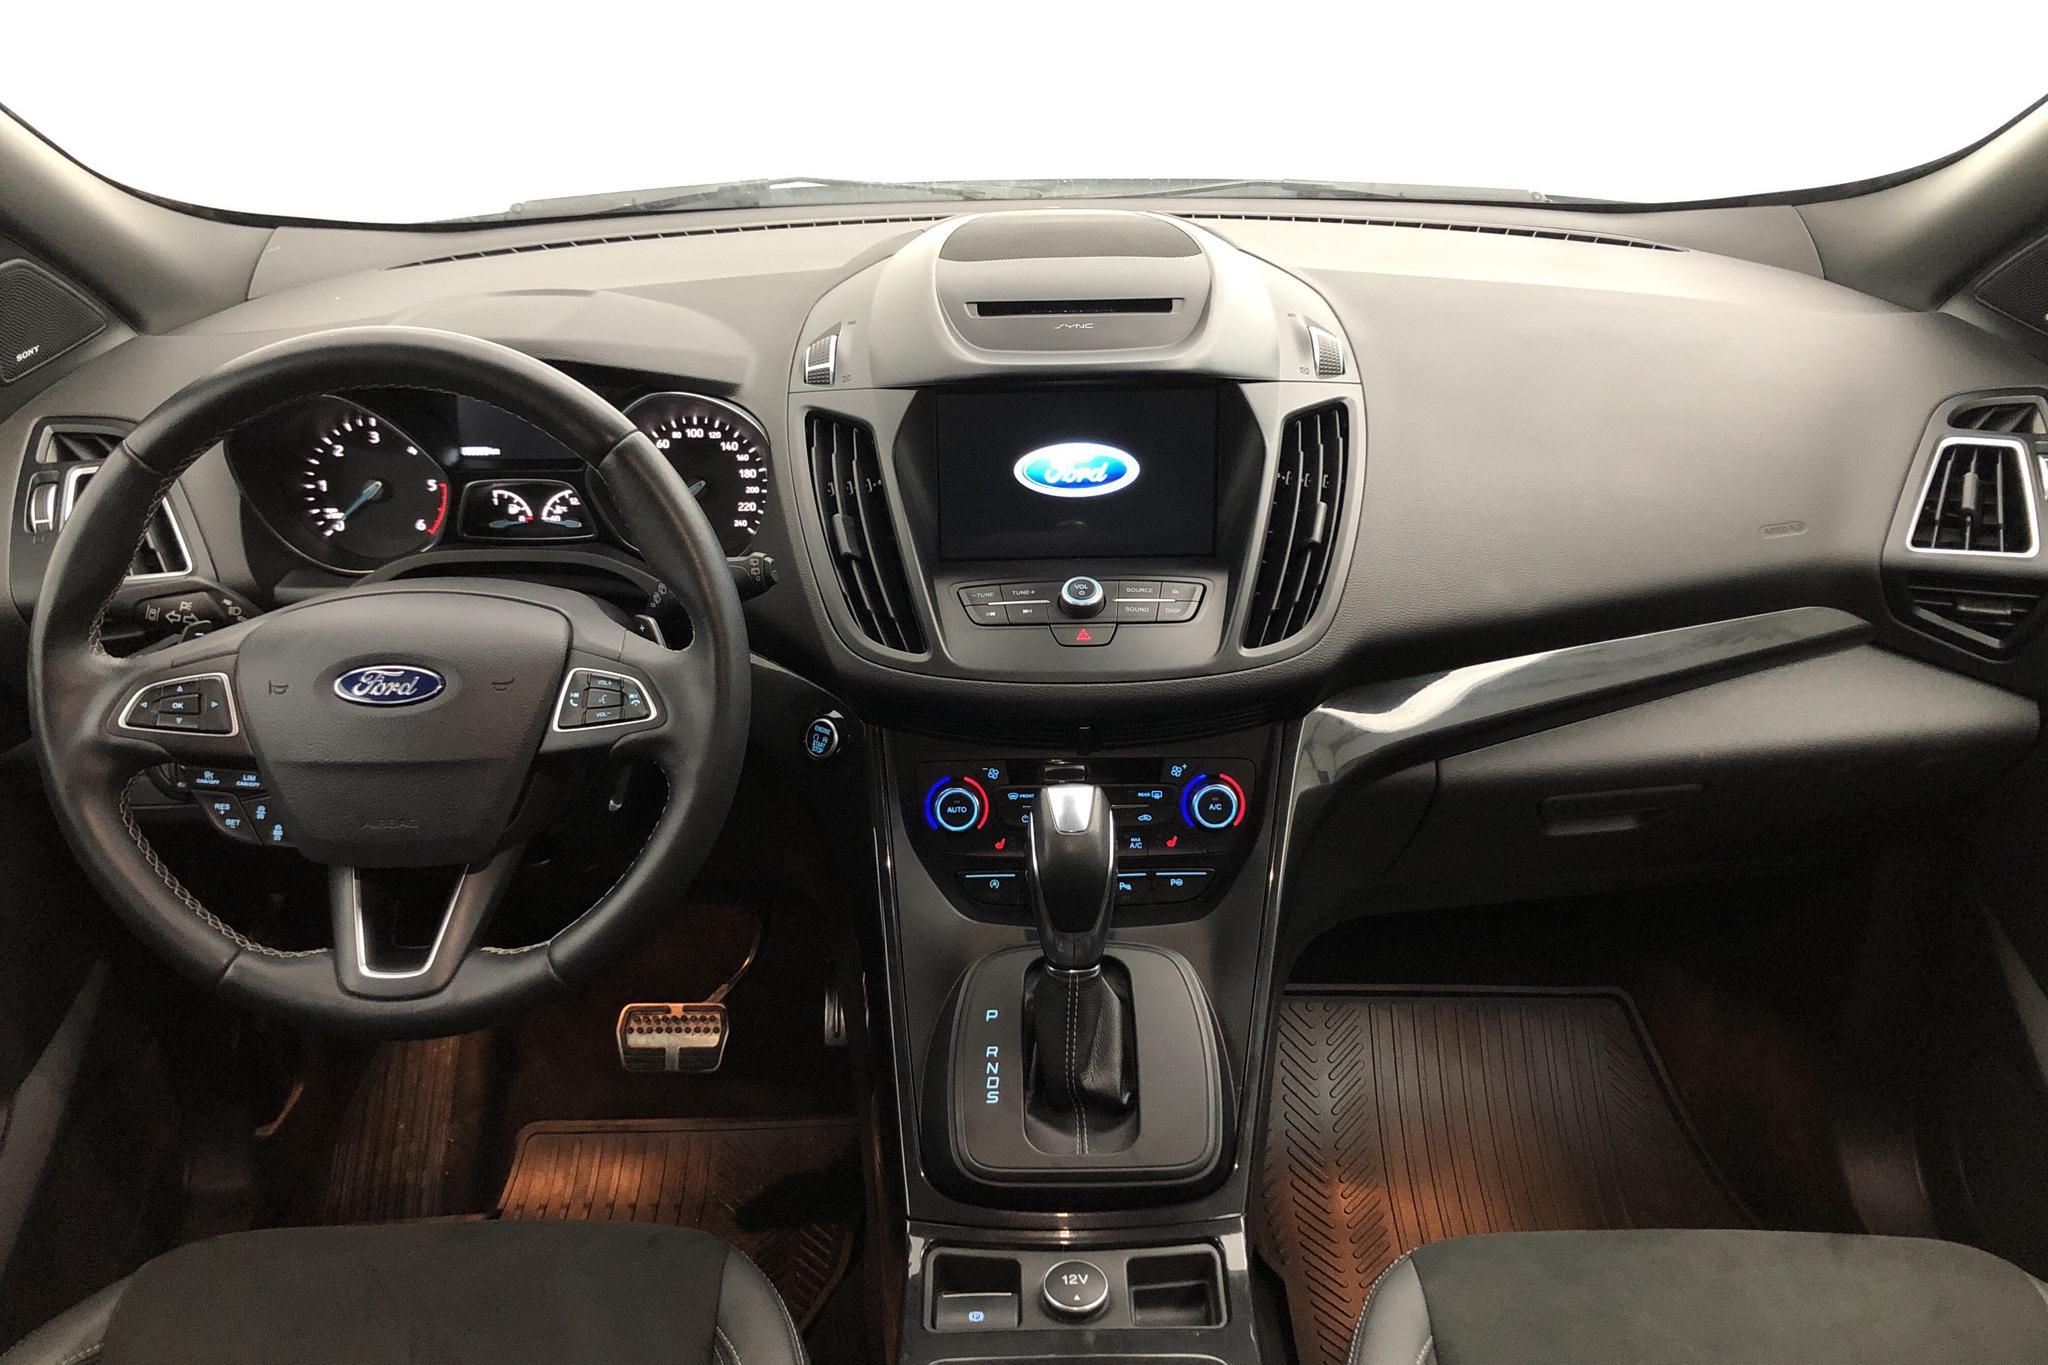 Ford Kuga 2.0 TDCi AWD (180hk) - 60 540 km - Automatic - white - 2018